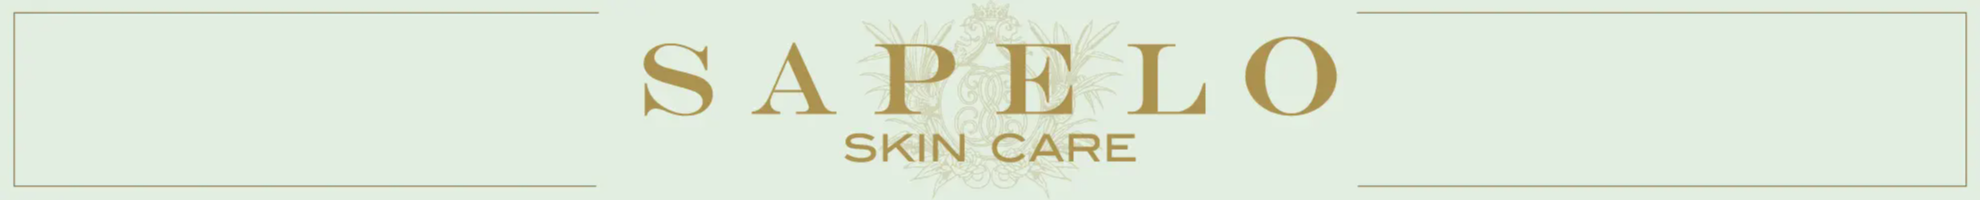 Sapelo Skin care logo